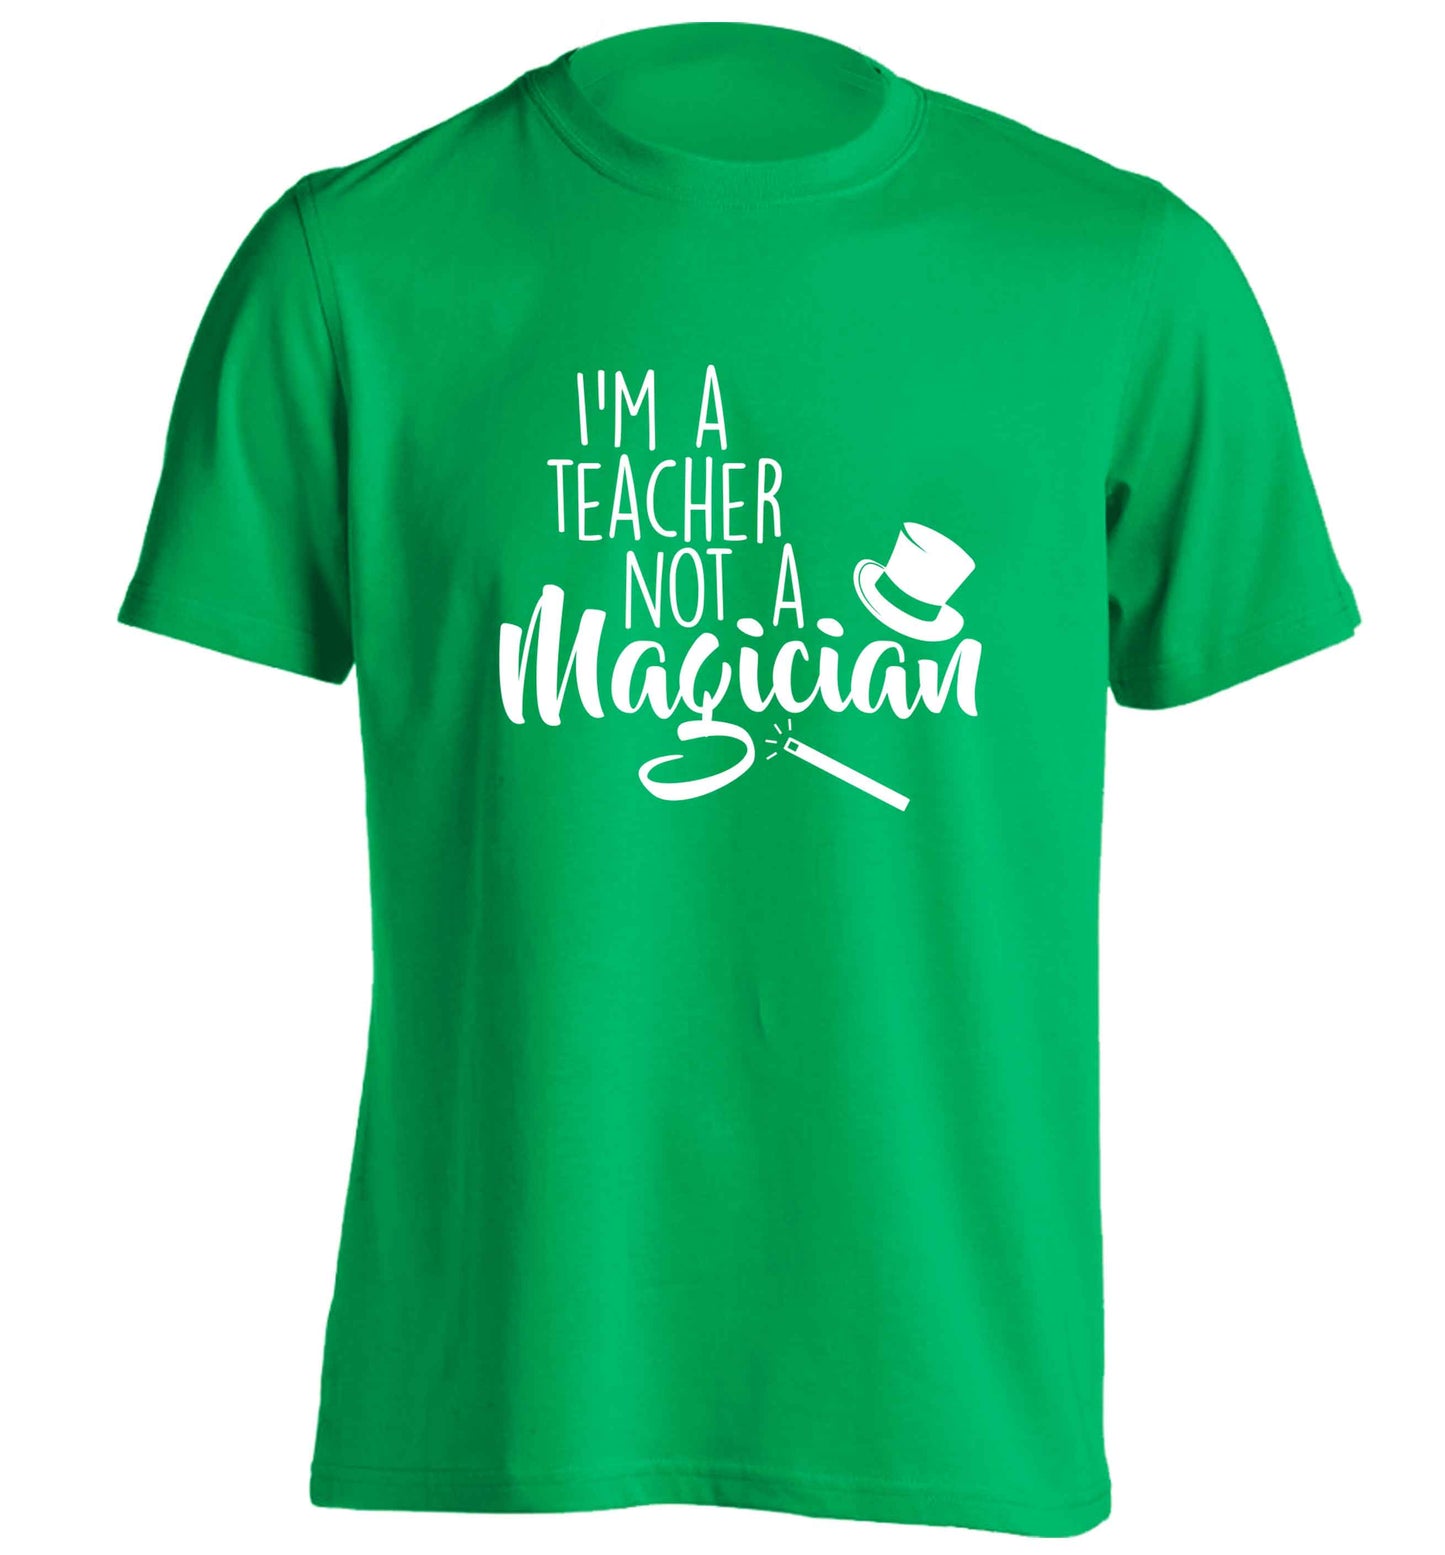 I'm a teacher not a magician adults unisex green Tshirt 2XL